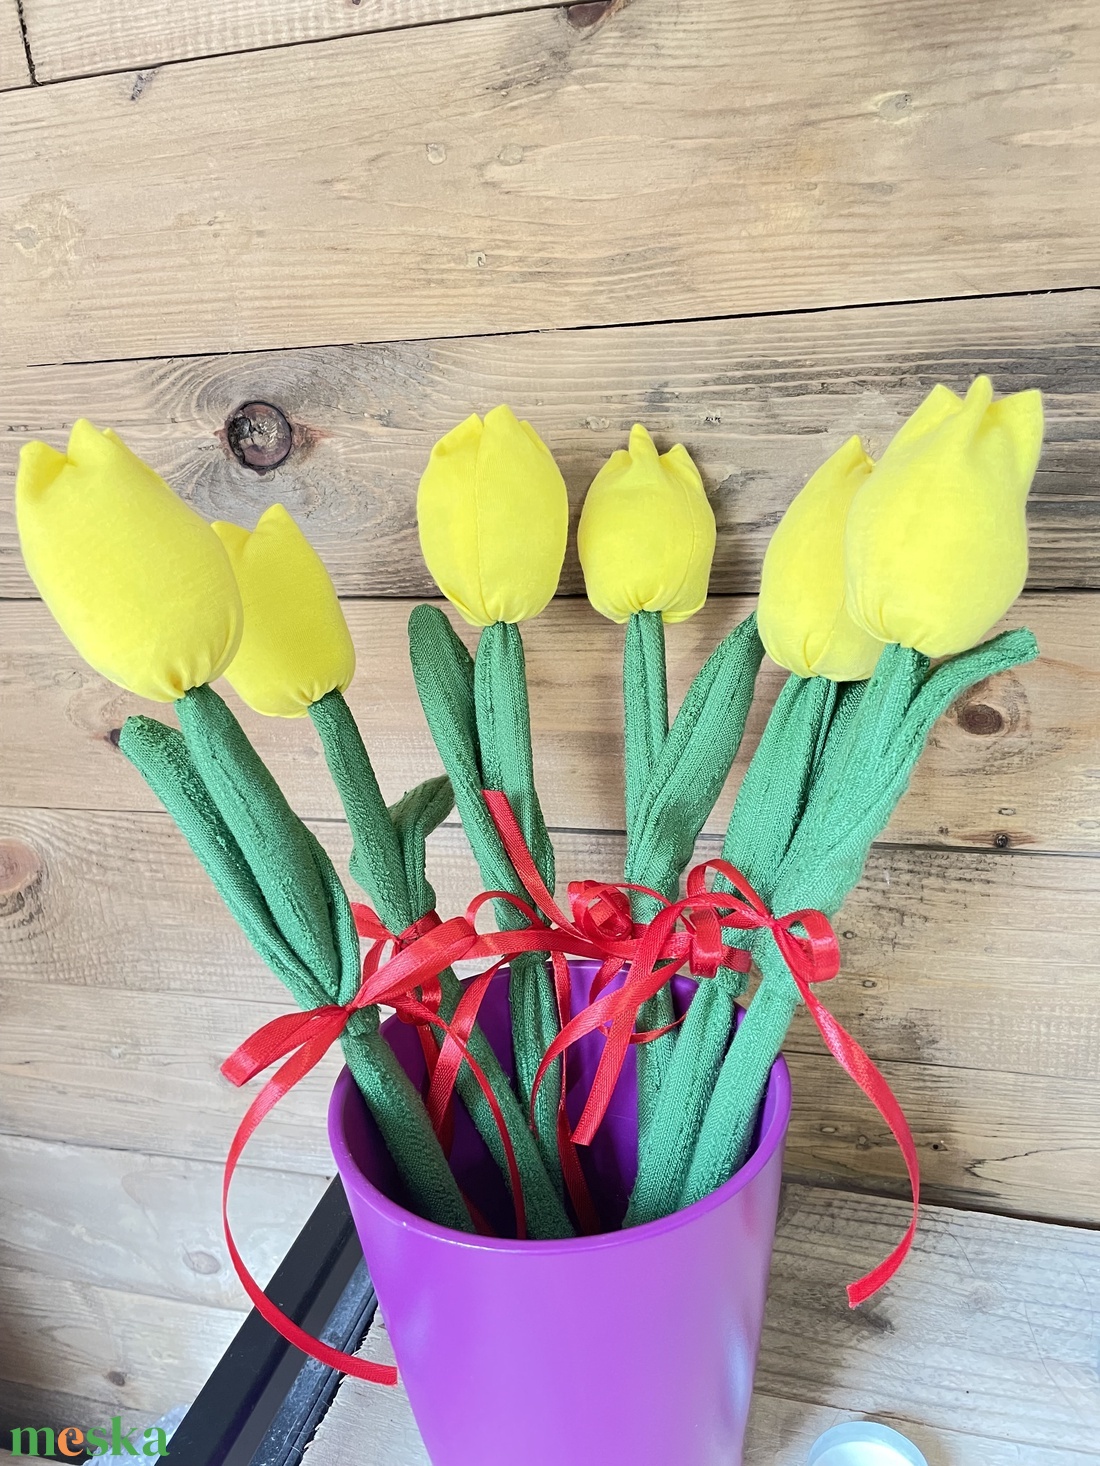 Textil tulipán (sárga) - otthon & lakás - dekoráció - virágdísz és tartó - csokor & virágdísz - Meska.hu